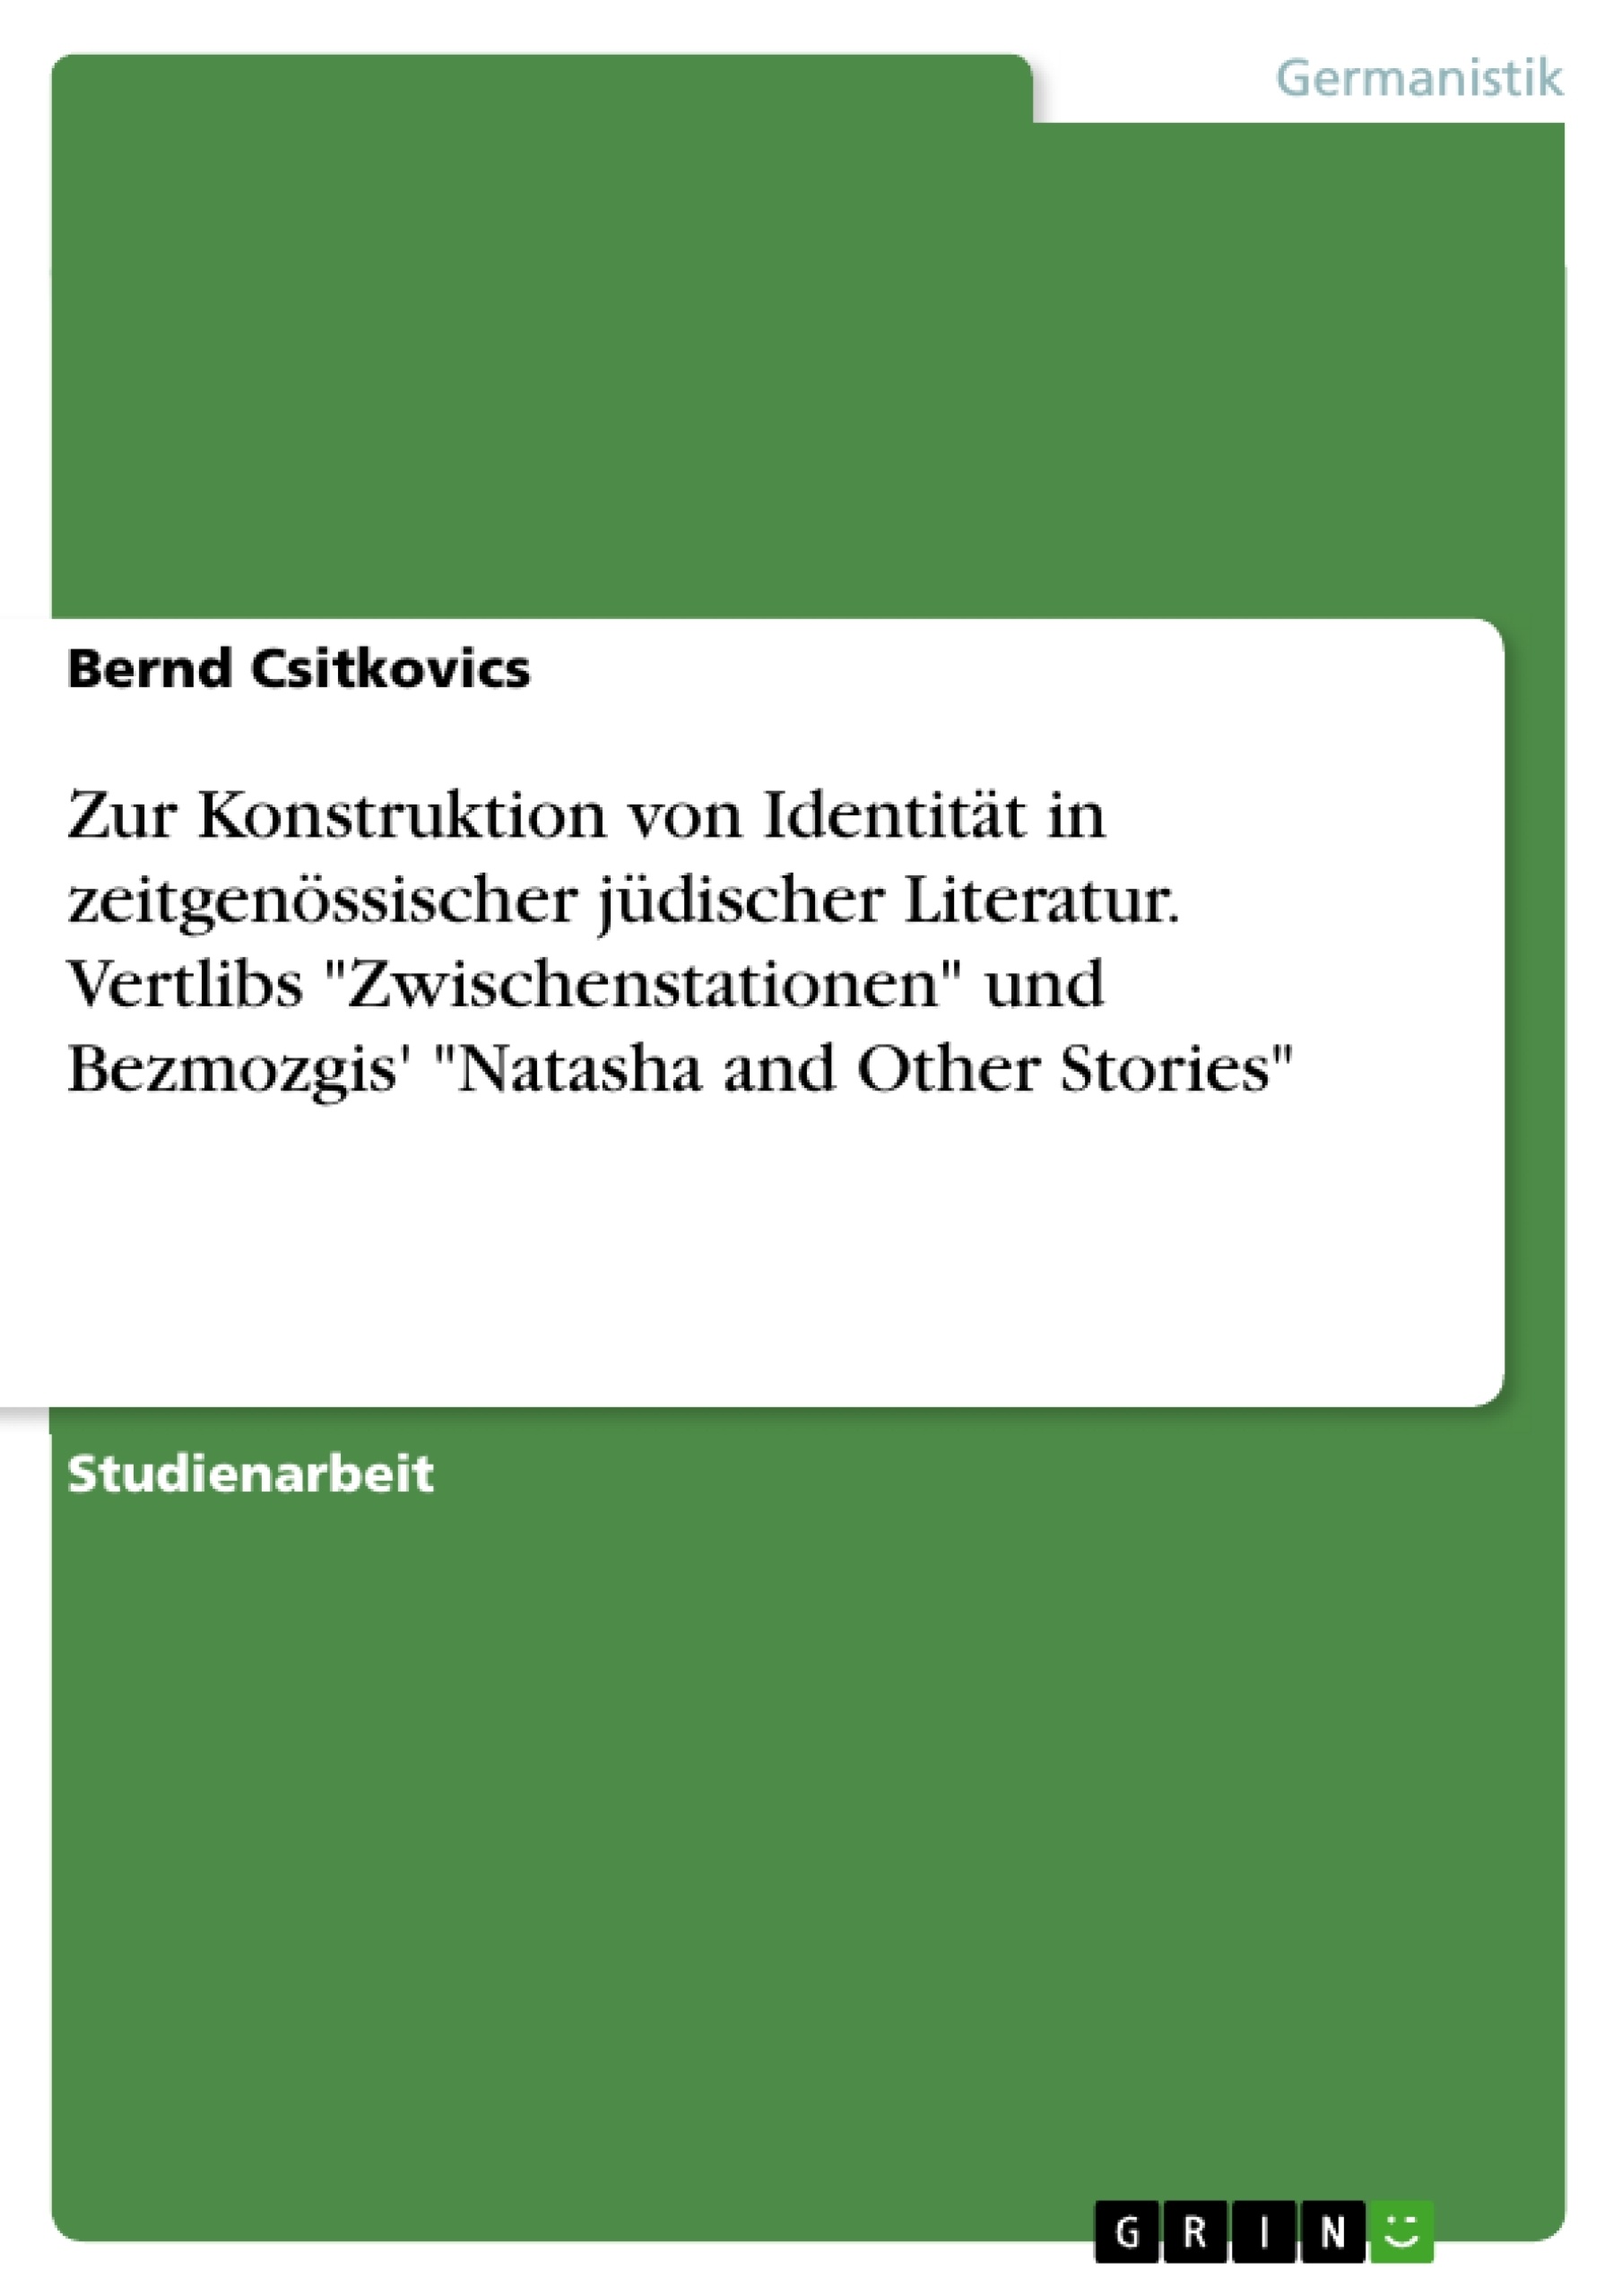 Titel: Zur Konstruktion von Identität in zeitgenössischer jüdischer Literatur. Vertlibs "Zwischenstationen" und Bezmozgis' "Natasha and Other Stories"